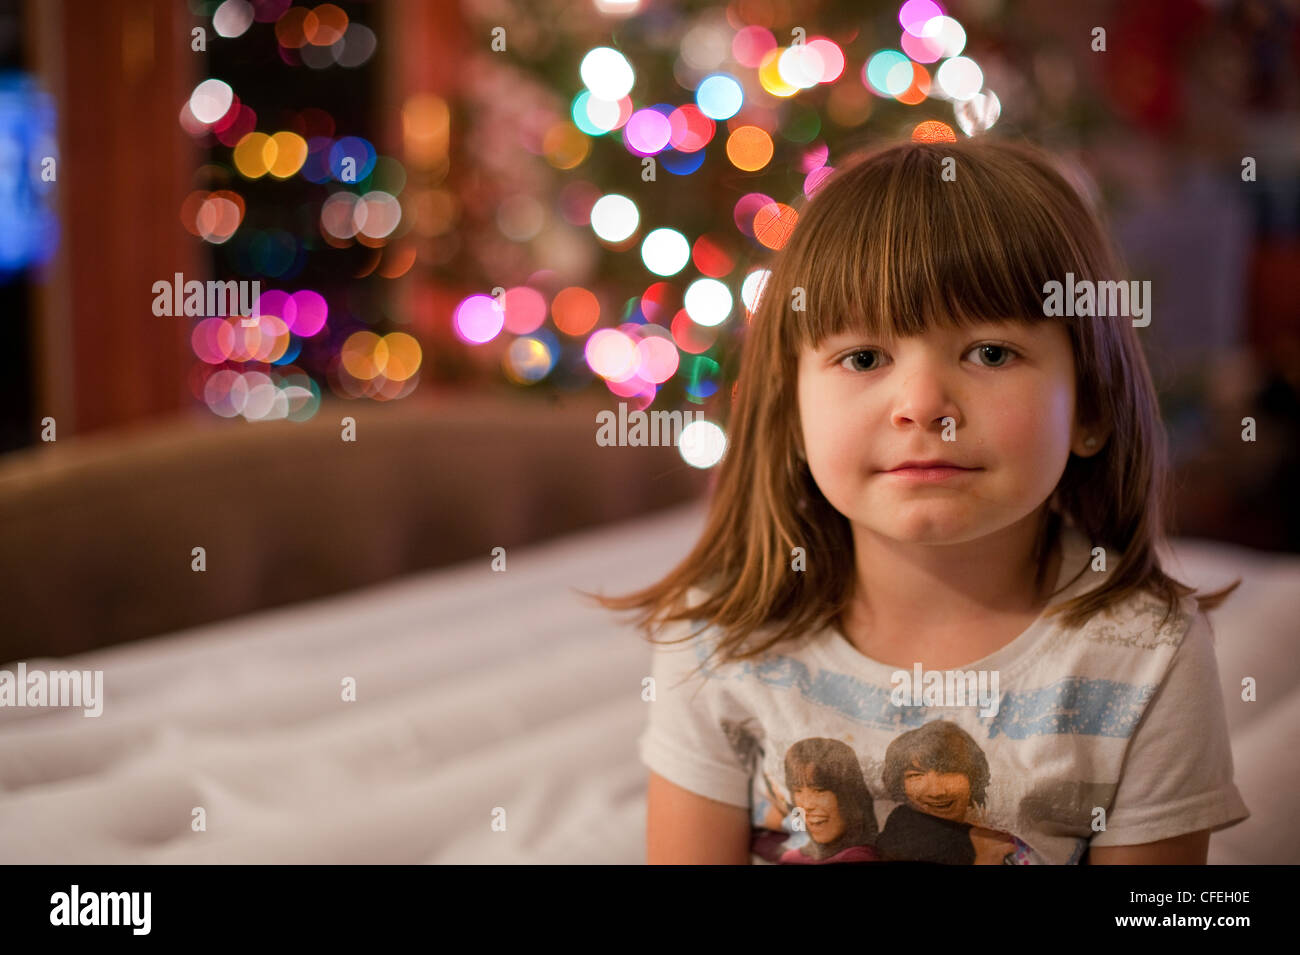 Carino 5 anno vecchia ragazza in posa davanti un colorato albero di natale e le luci. Foto Stock